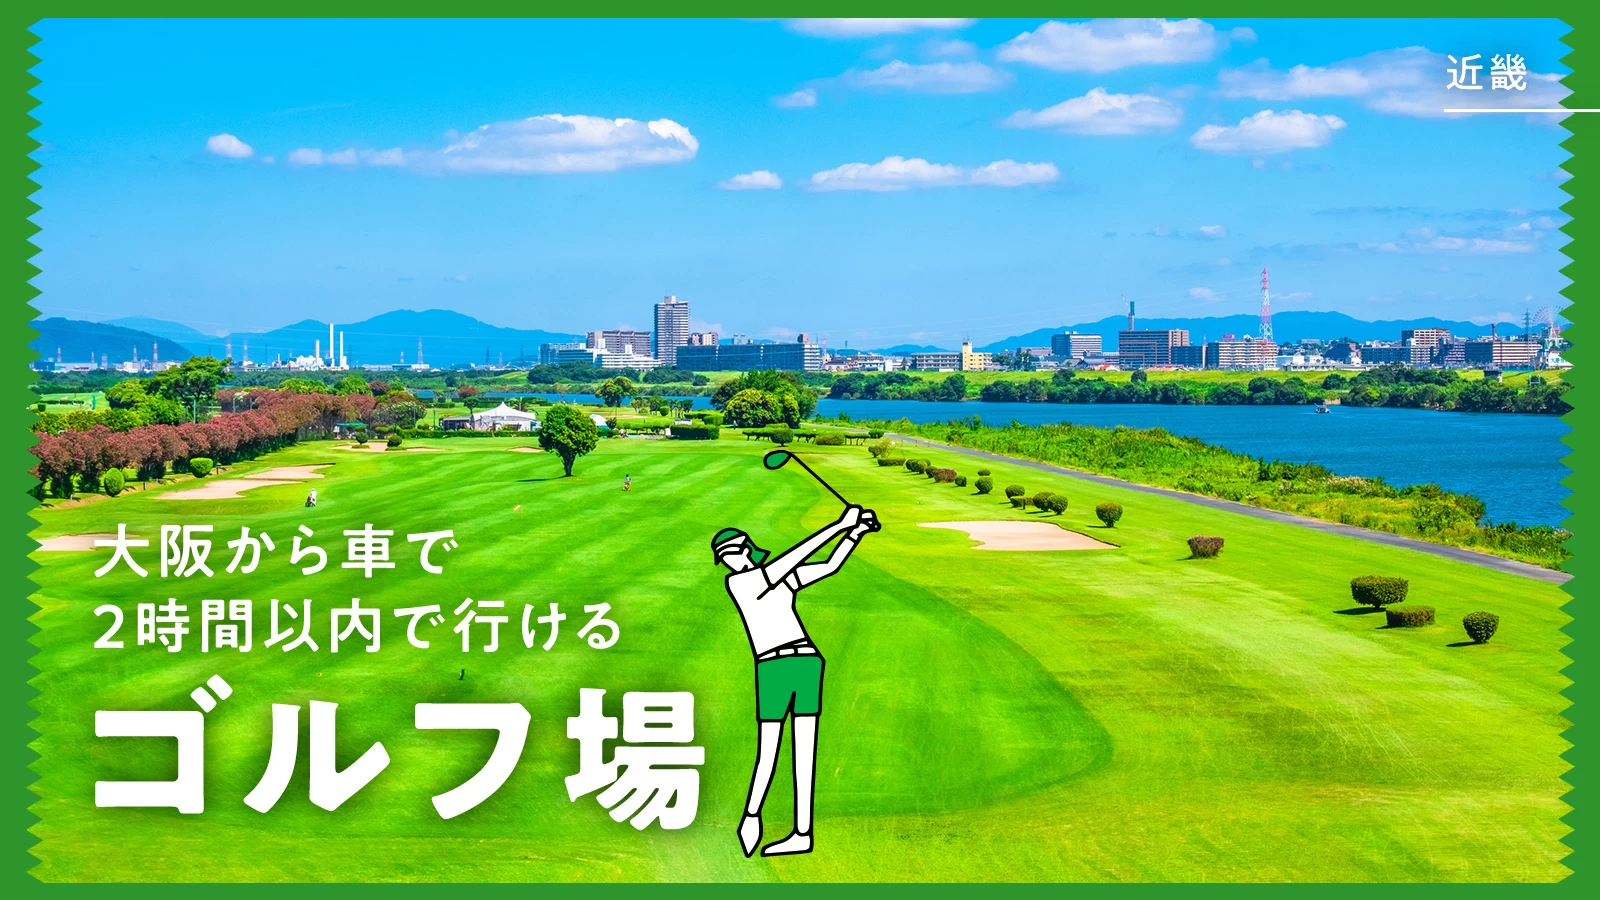 【近畿・おでかけ】大阪から車で2時間以内で行けるゴルフ場5選